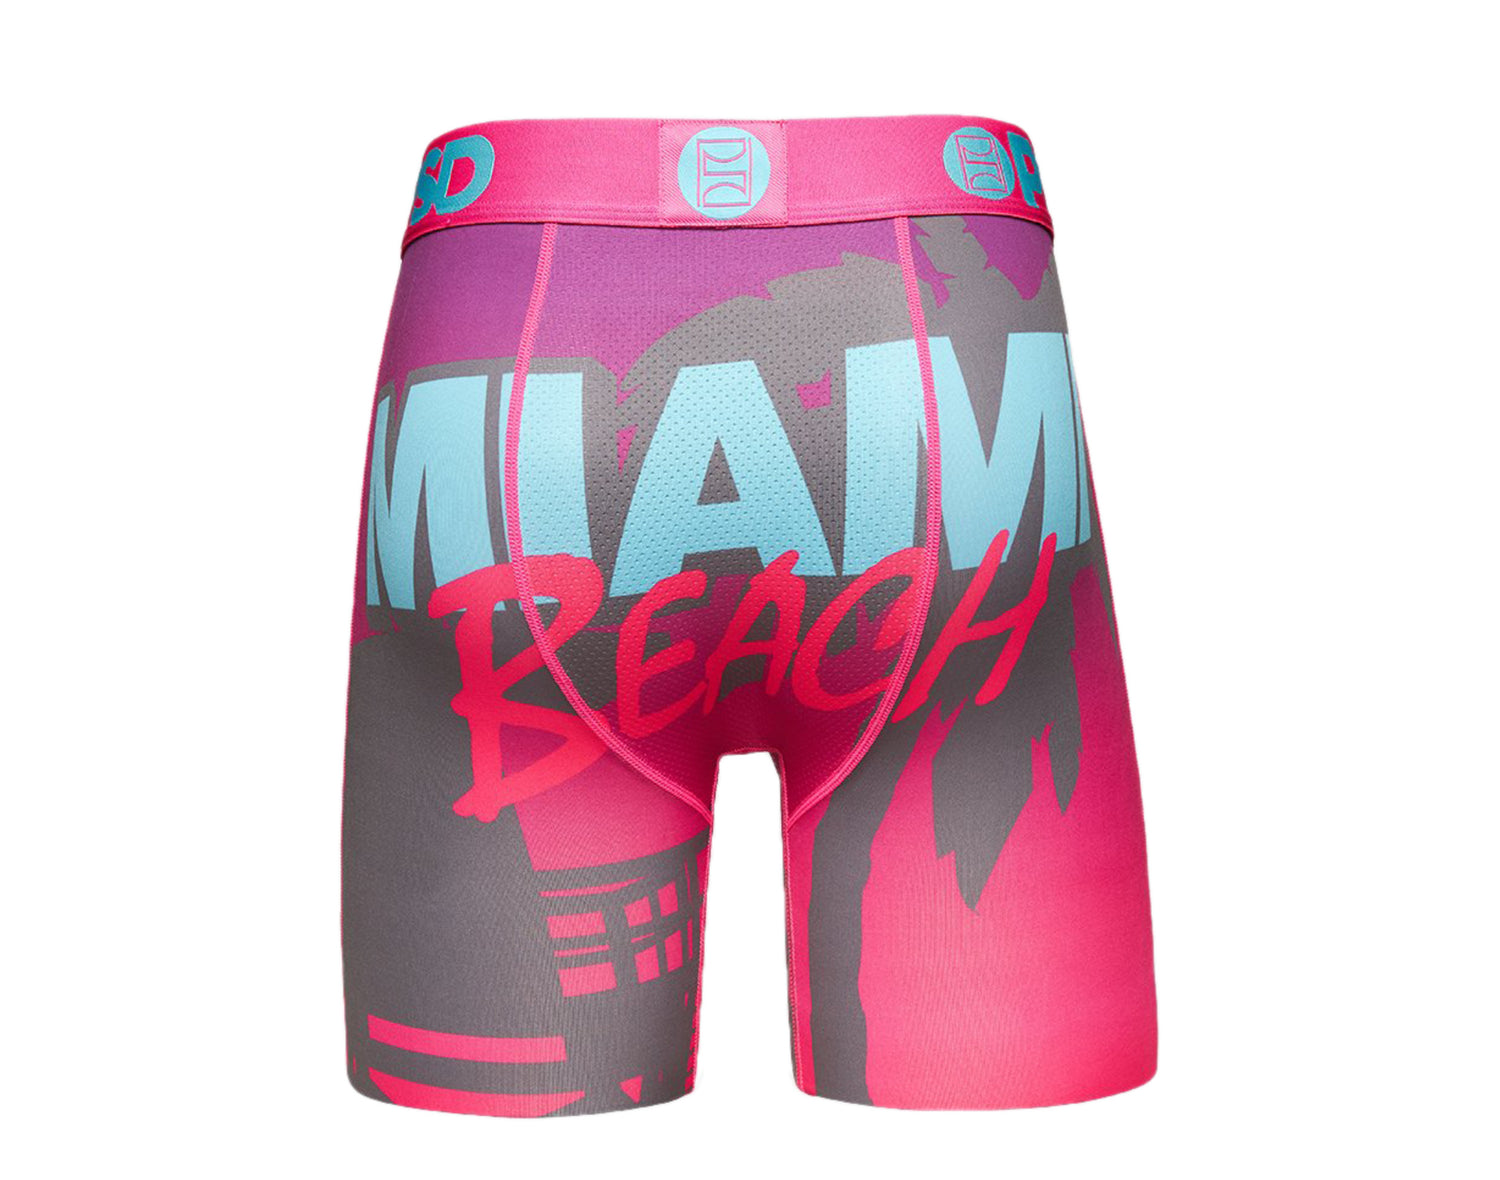 PSD Miami Beach Boxer Briefs Men's Underwear